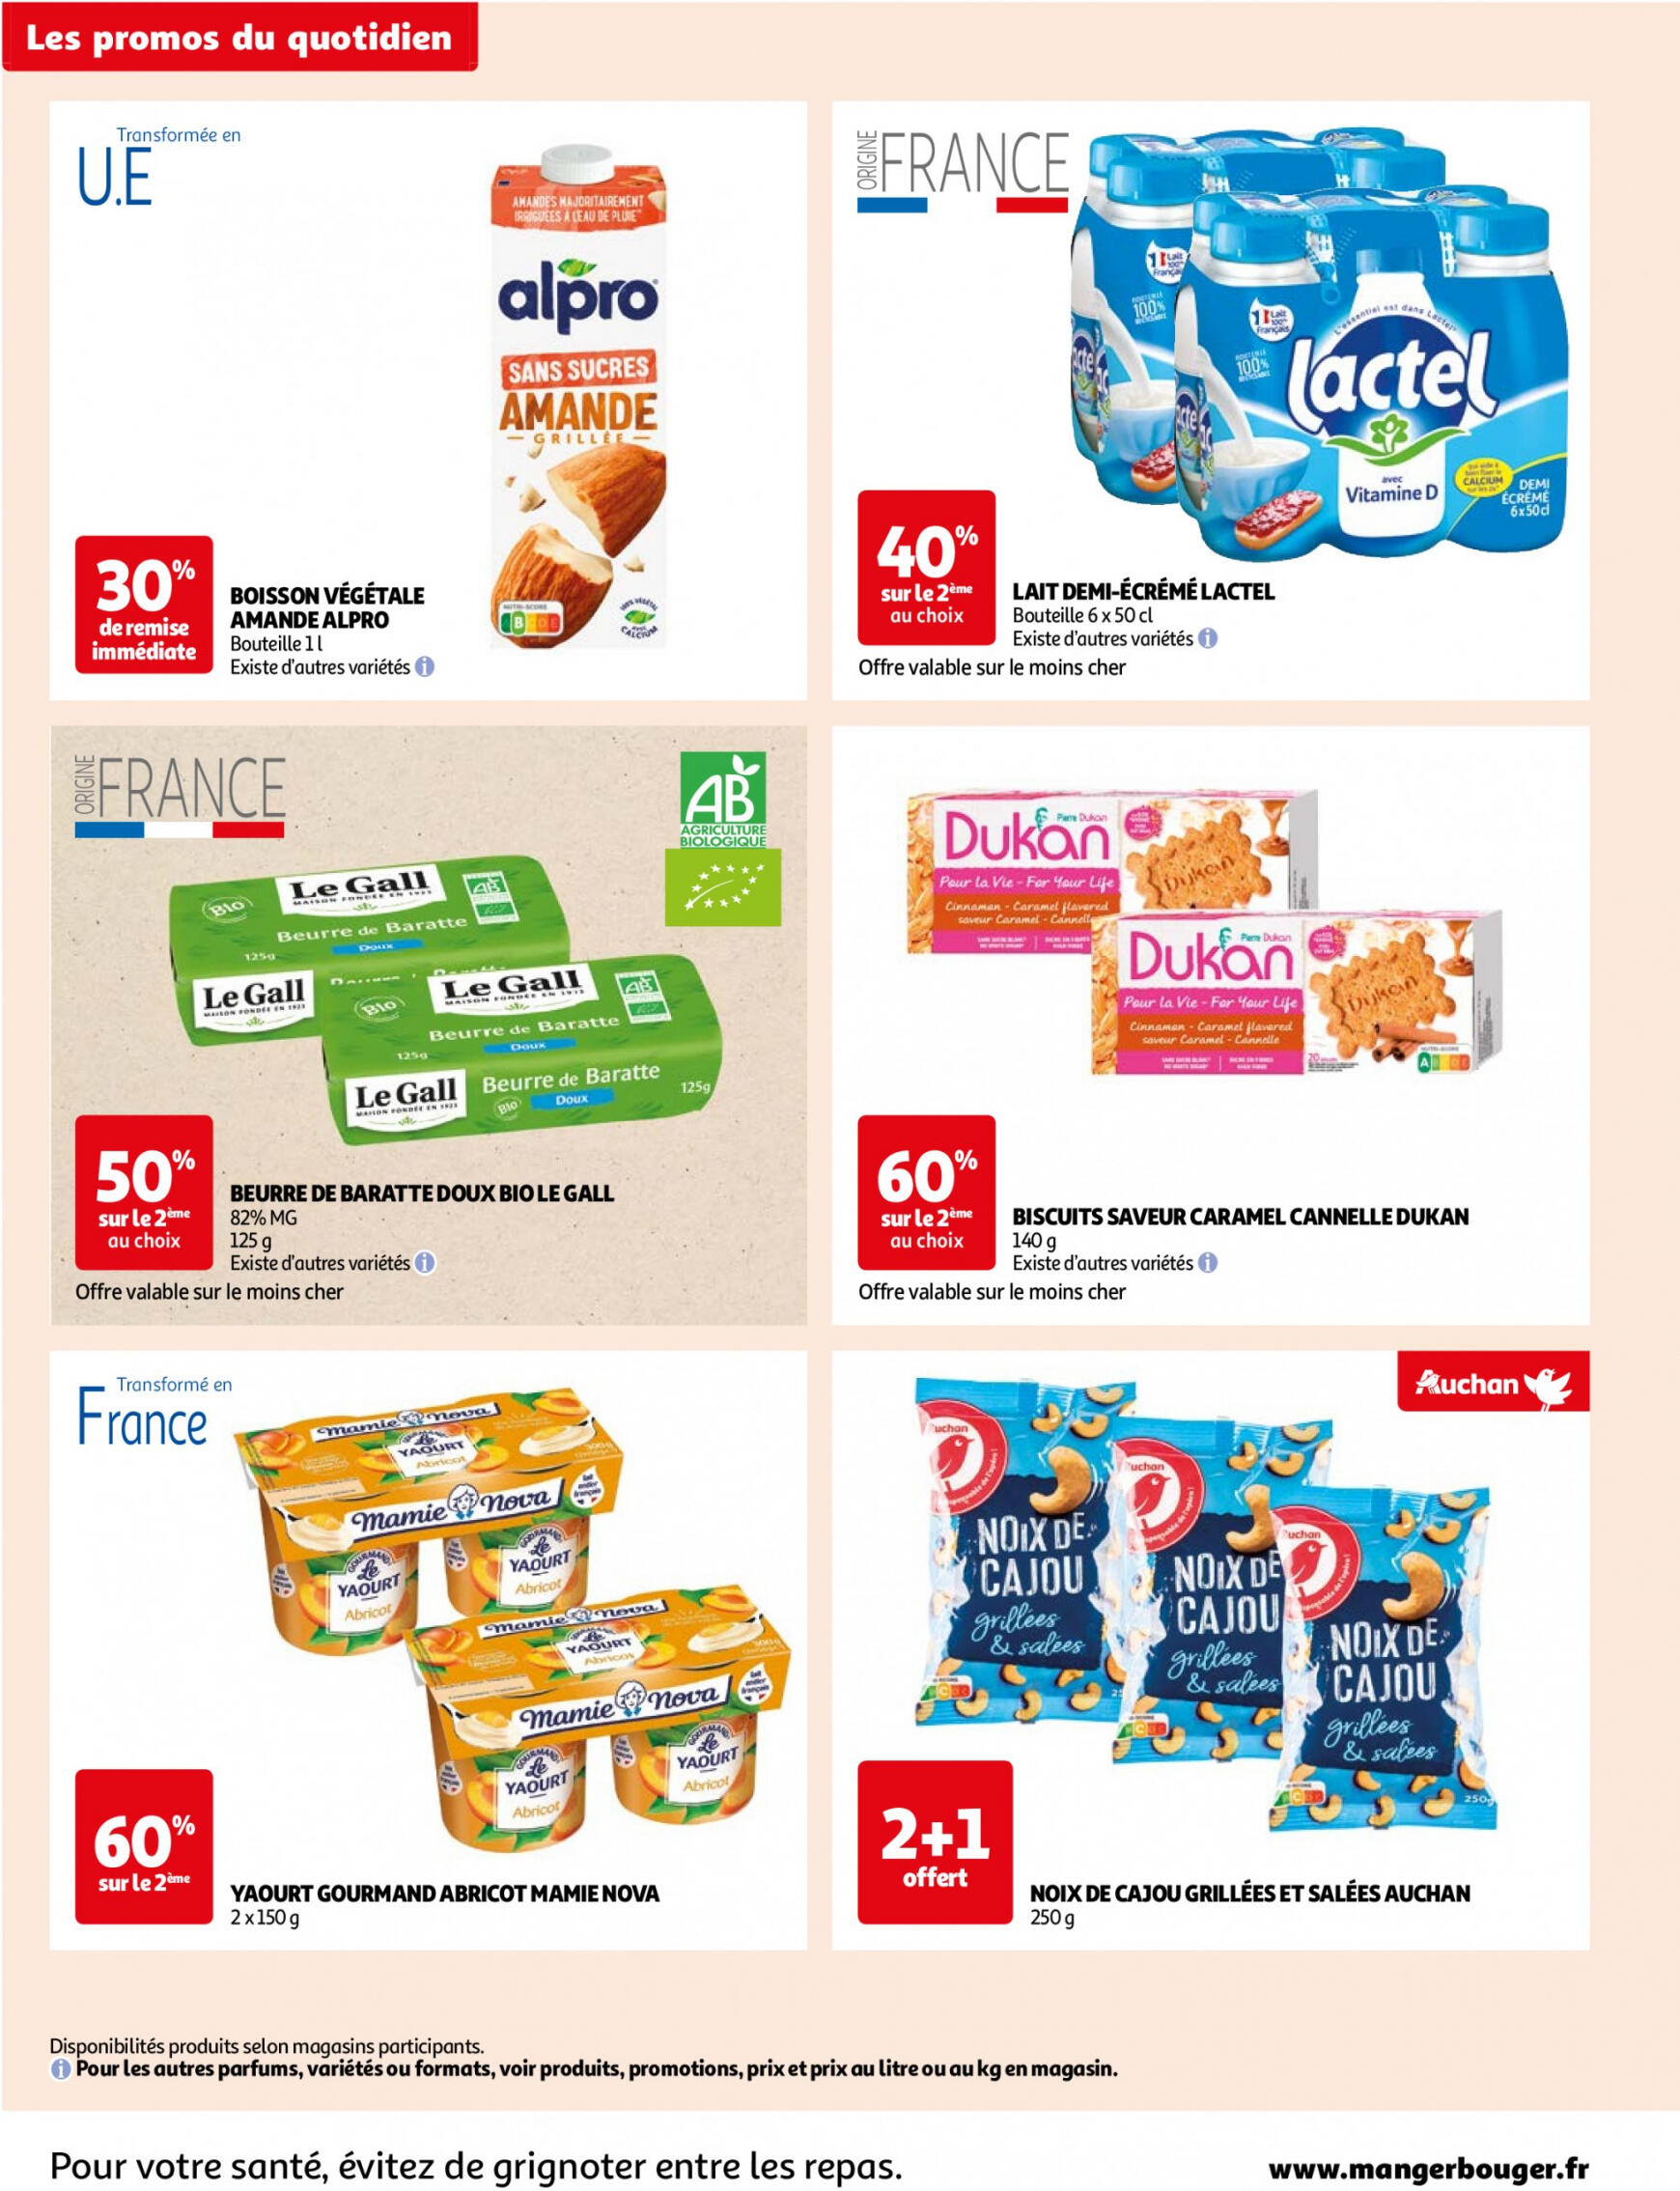 auchan - Auchan - Des économies au quotidien folder huidig 14.05. - 03.06. - page: 2